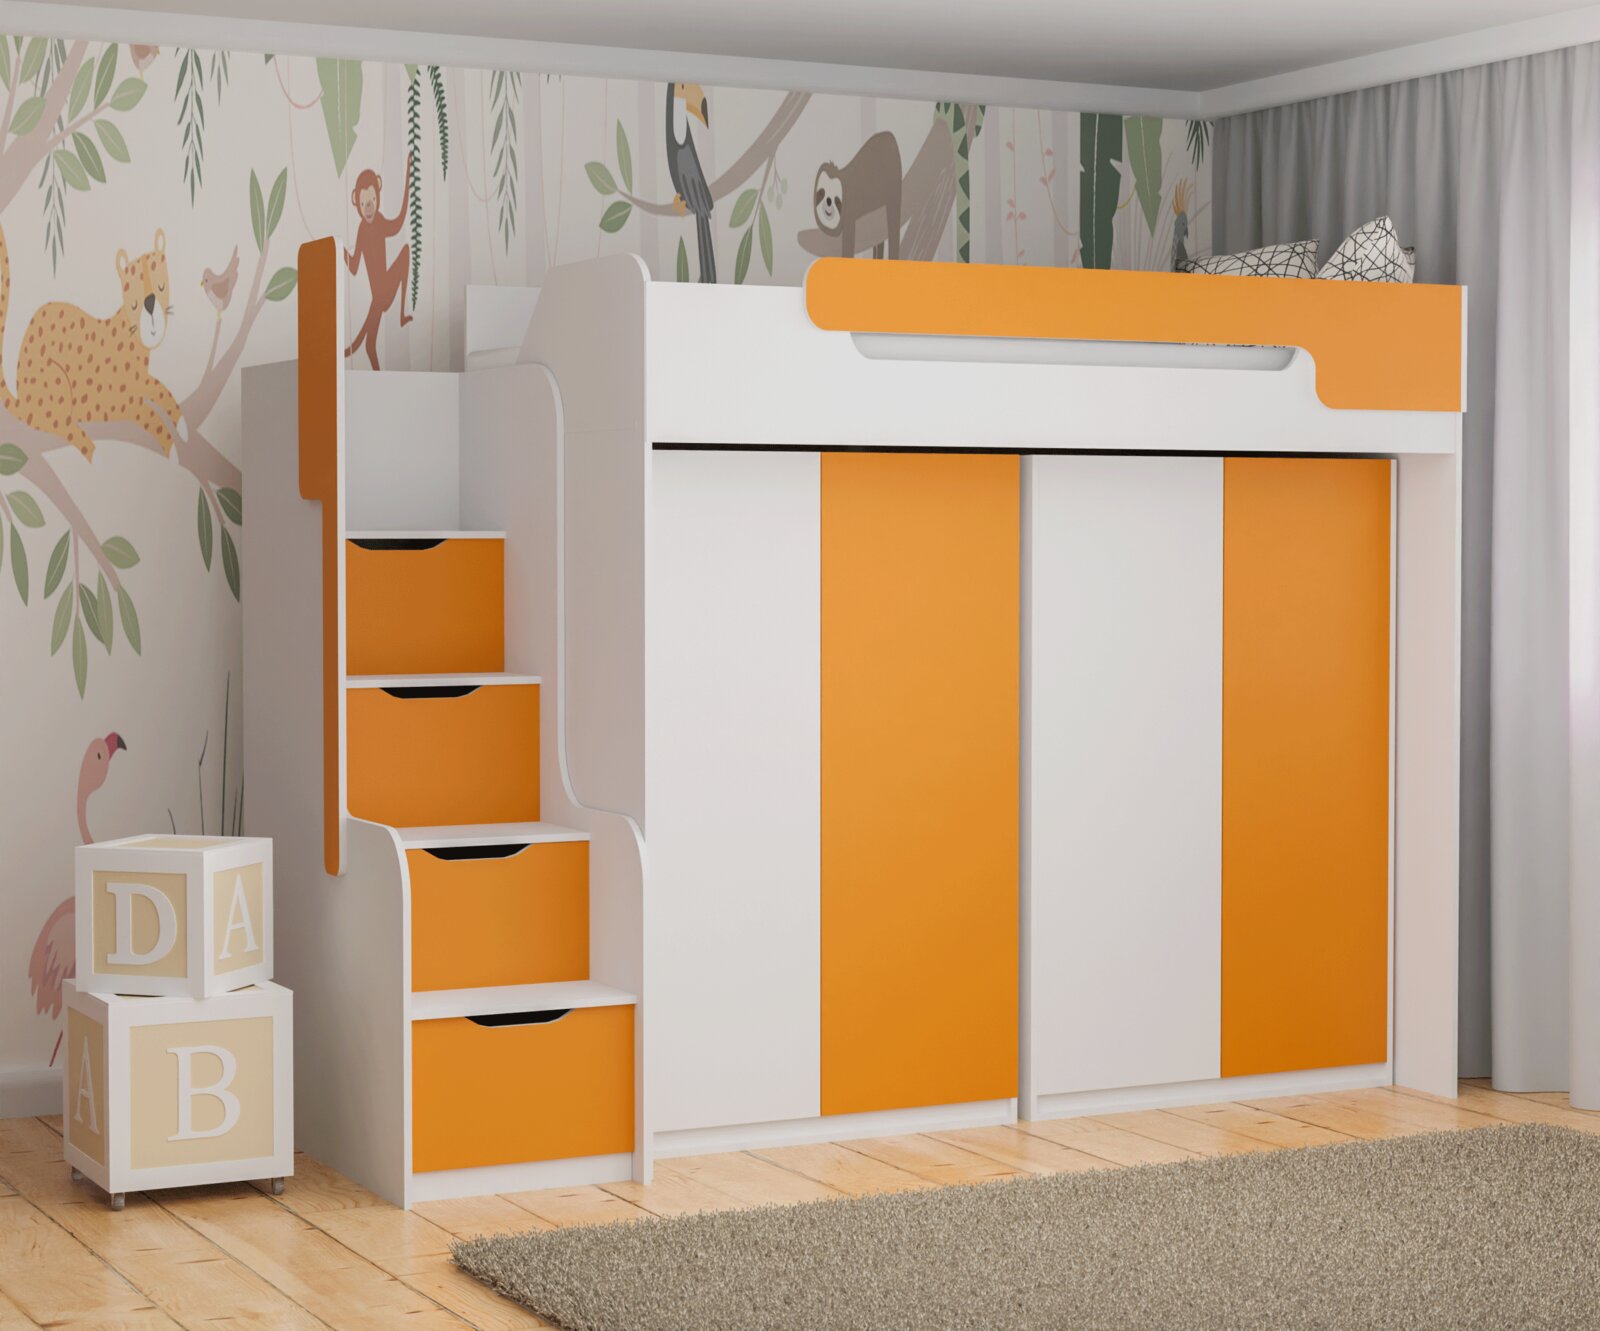 Multifunkční patrová postel Dori se skříněmi, lamino bílá/oranžová